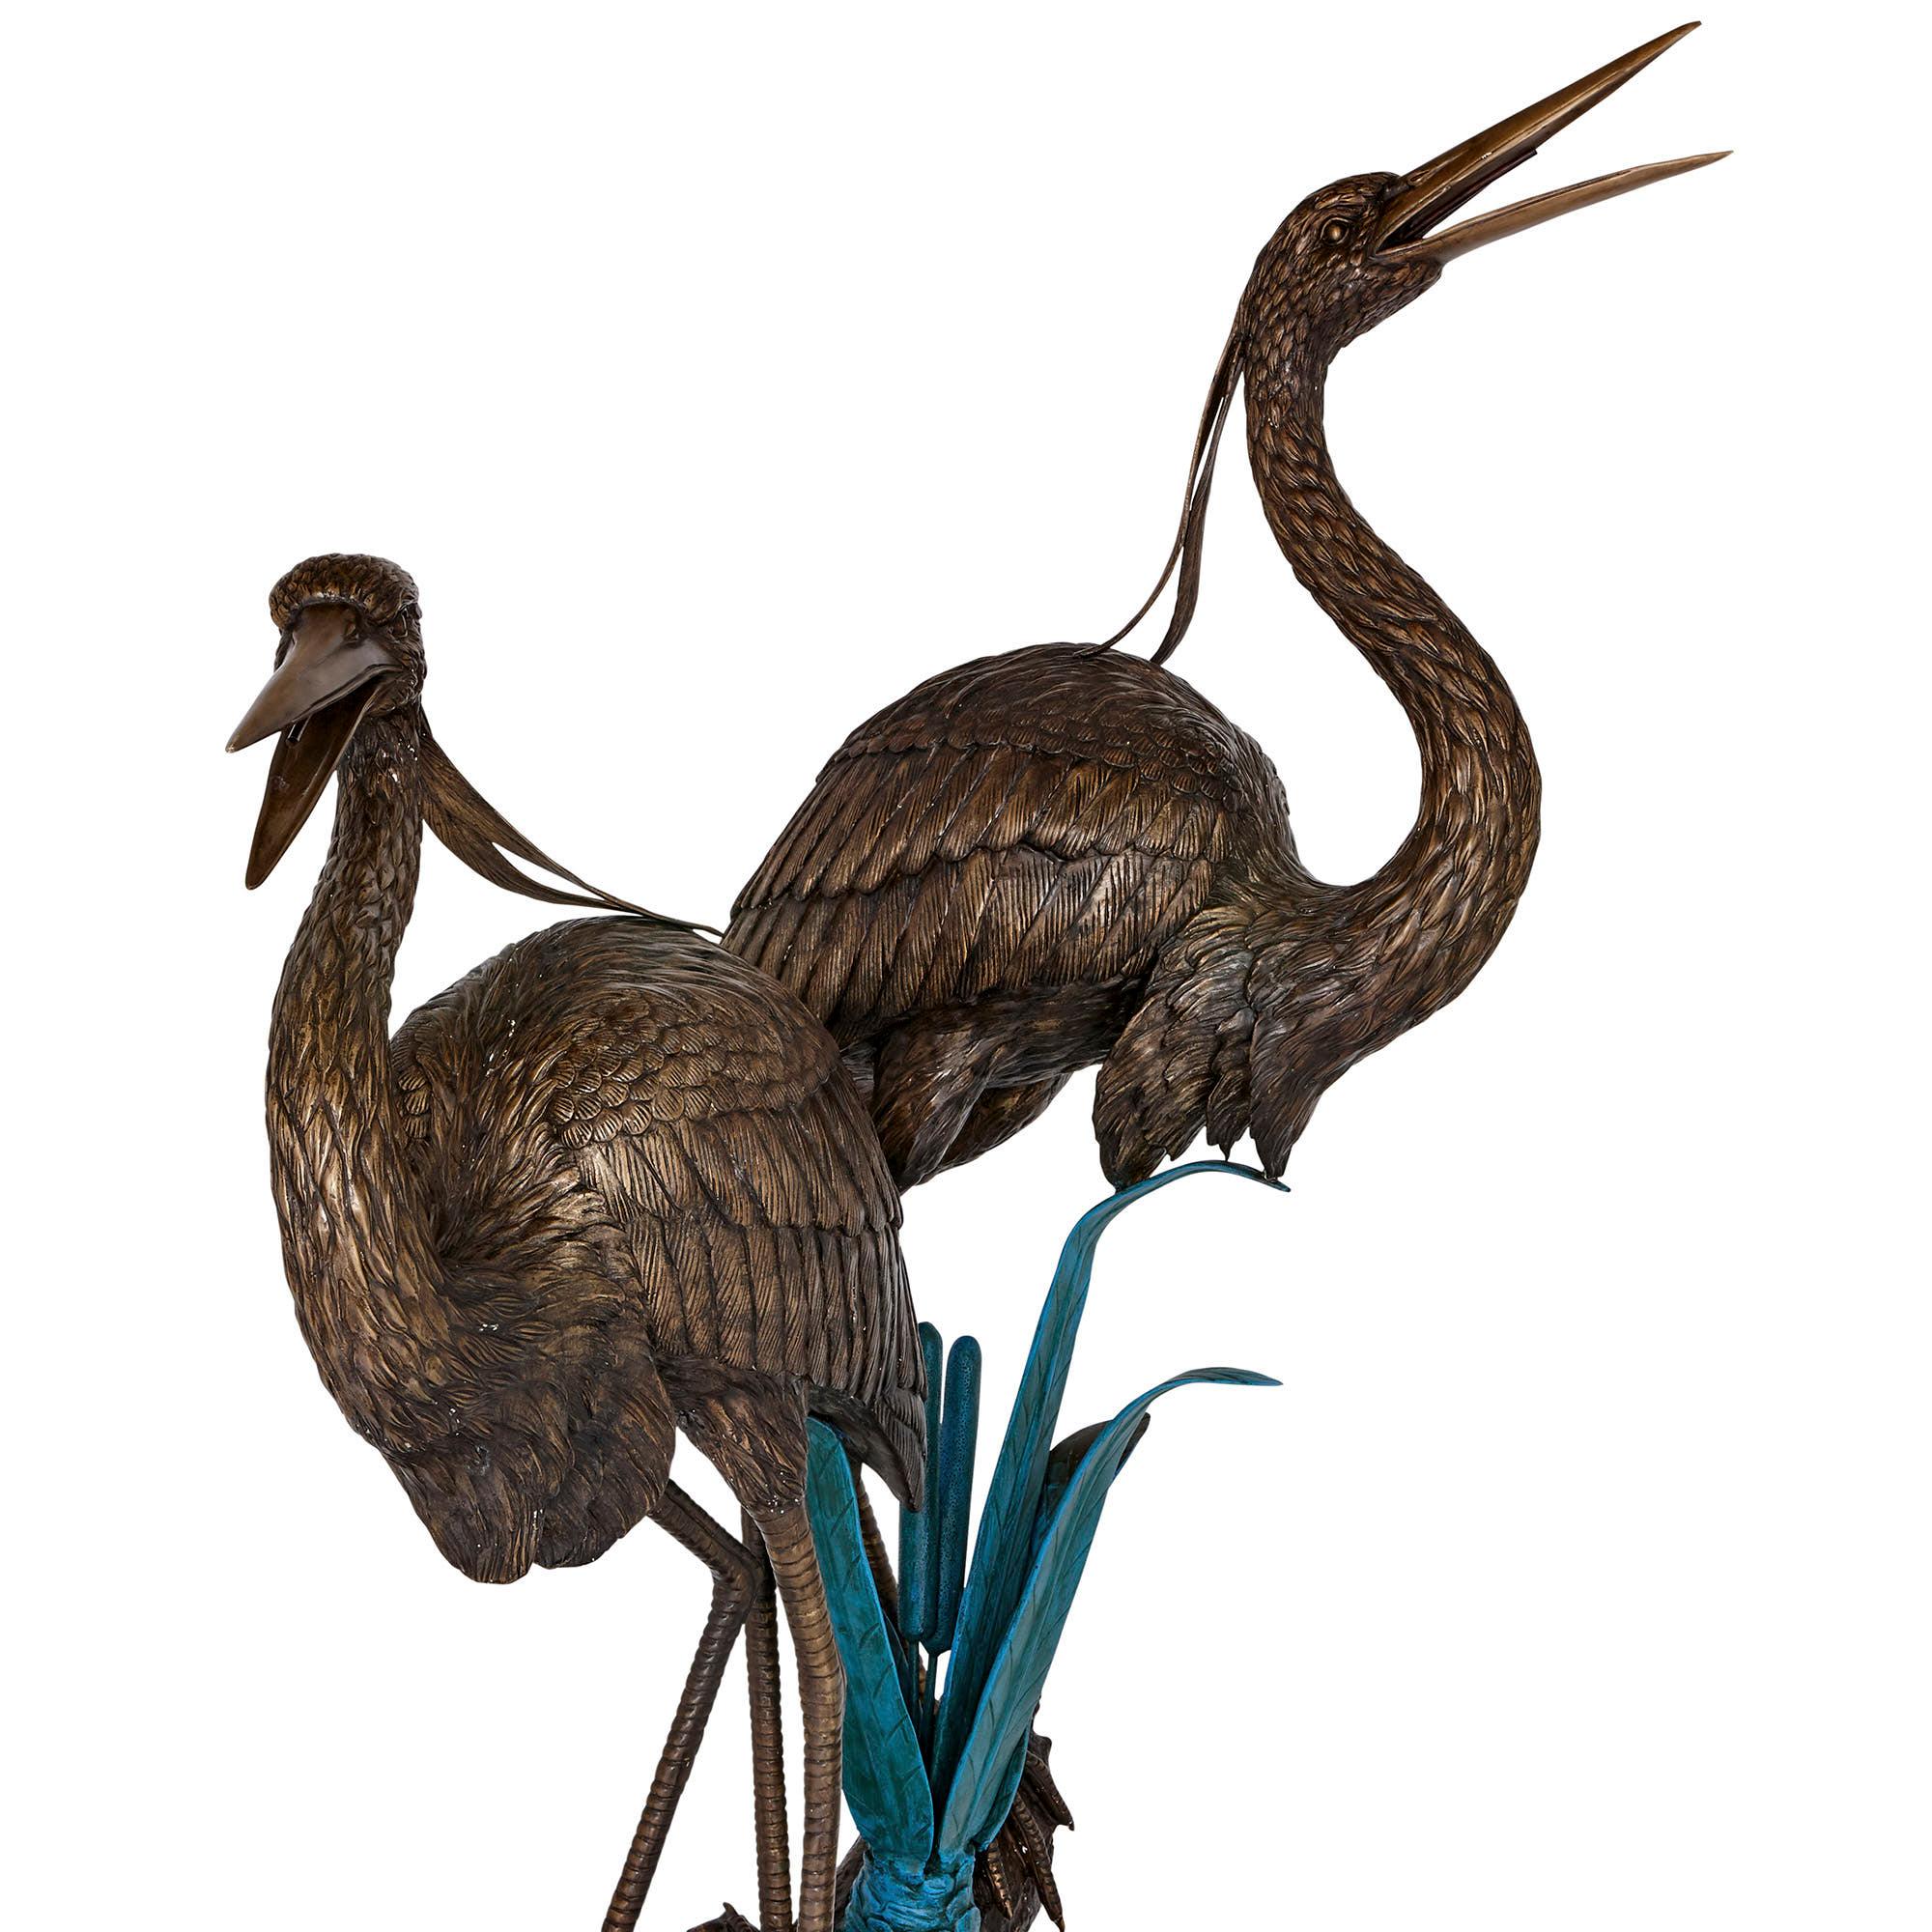 Dieses wunderbare Werk aus patinierter Bronze ist sowohl als Wasserfontäne als auch als großartige Skulptur gedacht. Der Artikel ist sowohl für den Innen- als auch für den Außenbereich gut geeignet.

Das Werk hat die Form von zwei Reihern